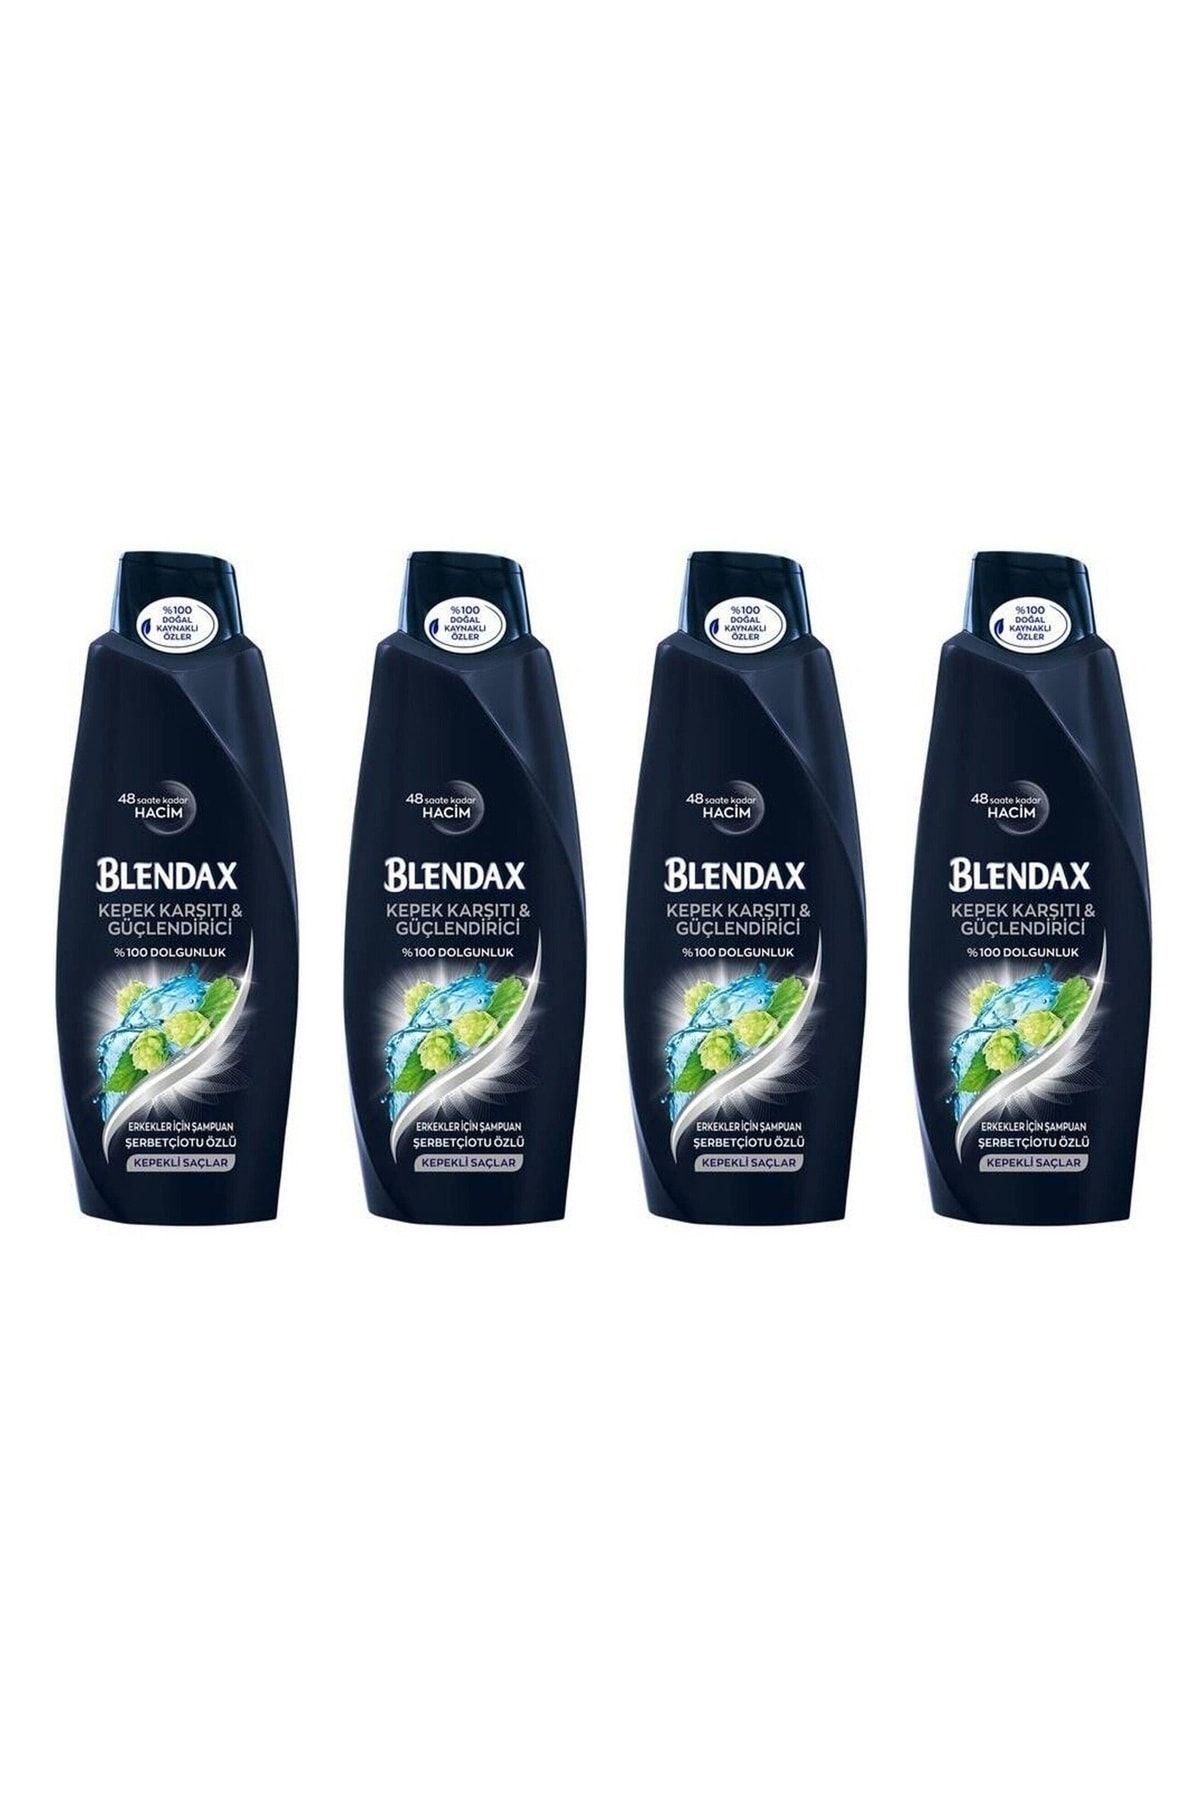 Blendax Men Kepeğe Karşı Etkili Doğal Kil Özlü Şampuan 500 Ml 8690572805695 (4 Adet)